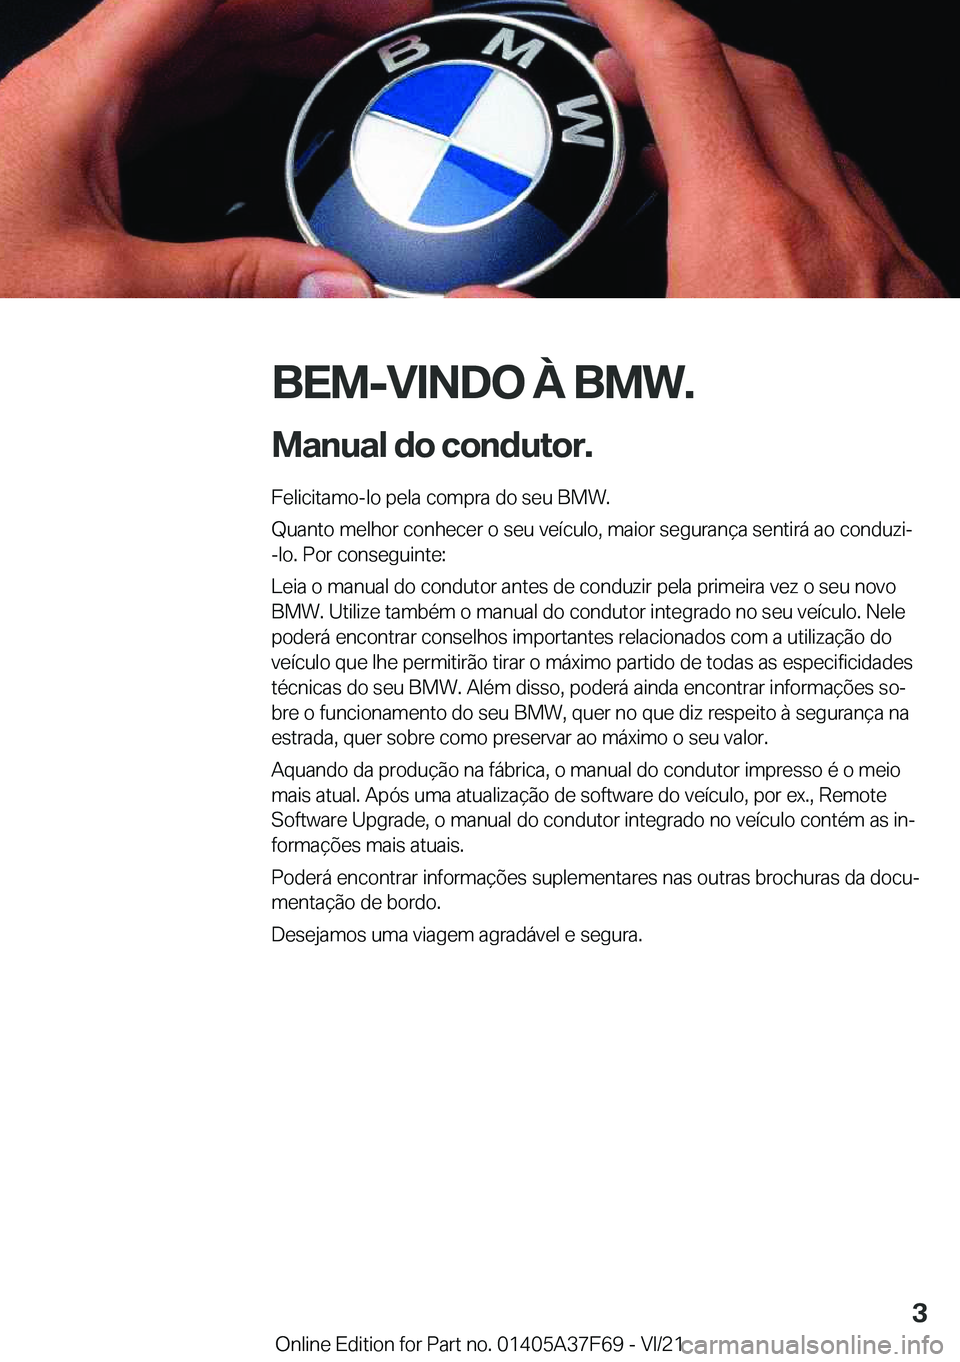 BMW M3 2022  Manual do condutor (in Portuguese) �B�E�M�-�V�I�N�D�O��À��B�M�W�.
�M�a�n�u�a�l��d�o��c�o�n�d�u�t�o�r�. �F�e�l�i�c�i�t�a�m�o�-�l�o��p�e�l�a��c�o�m�p�r�a��d�o��s�e�u��B�M�W�.
�Q�u�a�n�t�o��m�e�l�h�o�r��c�o�n�h�e�c�e�r��o��s